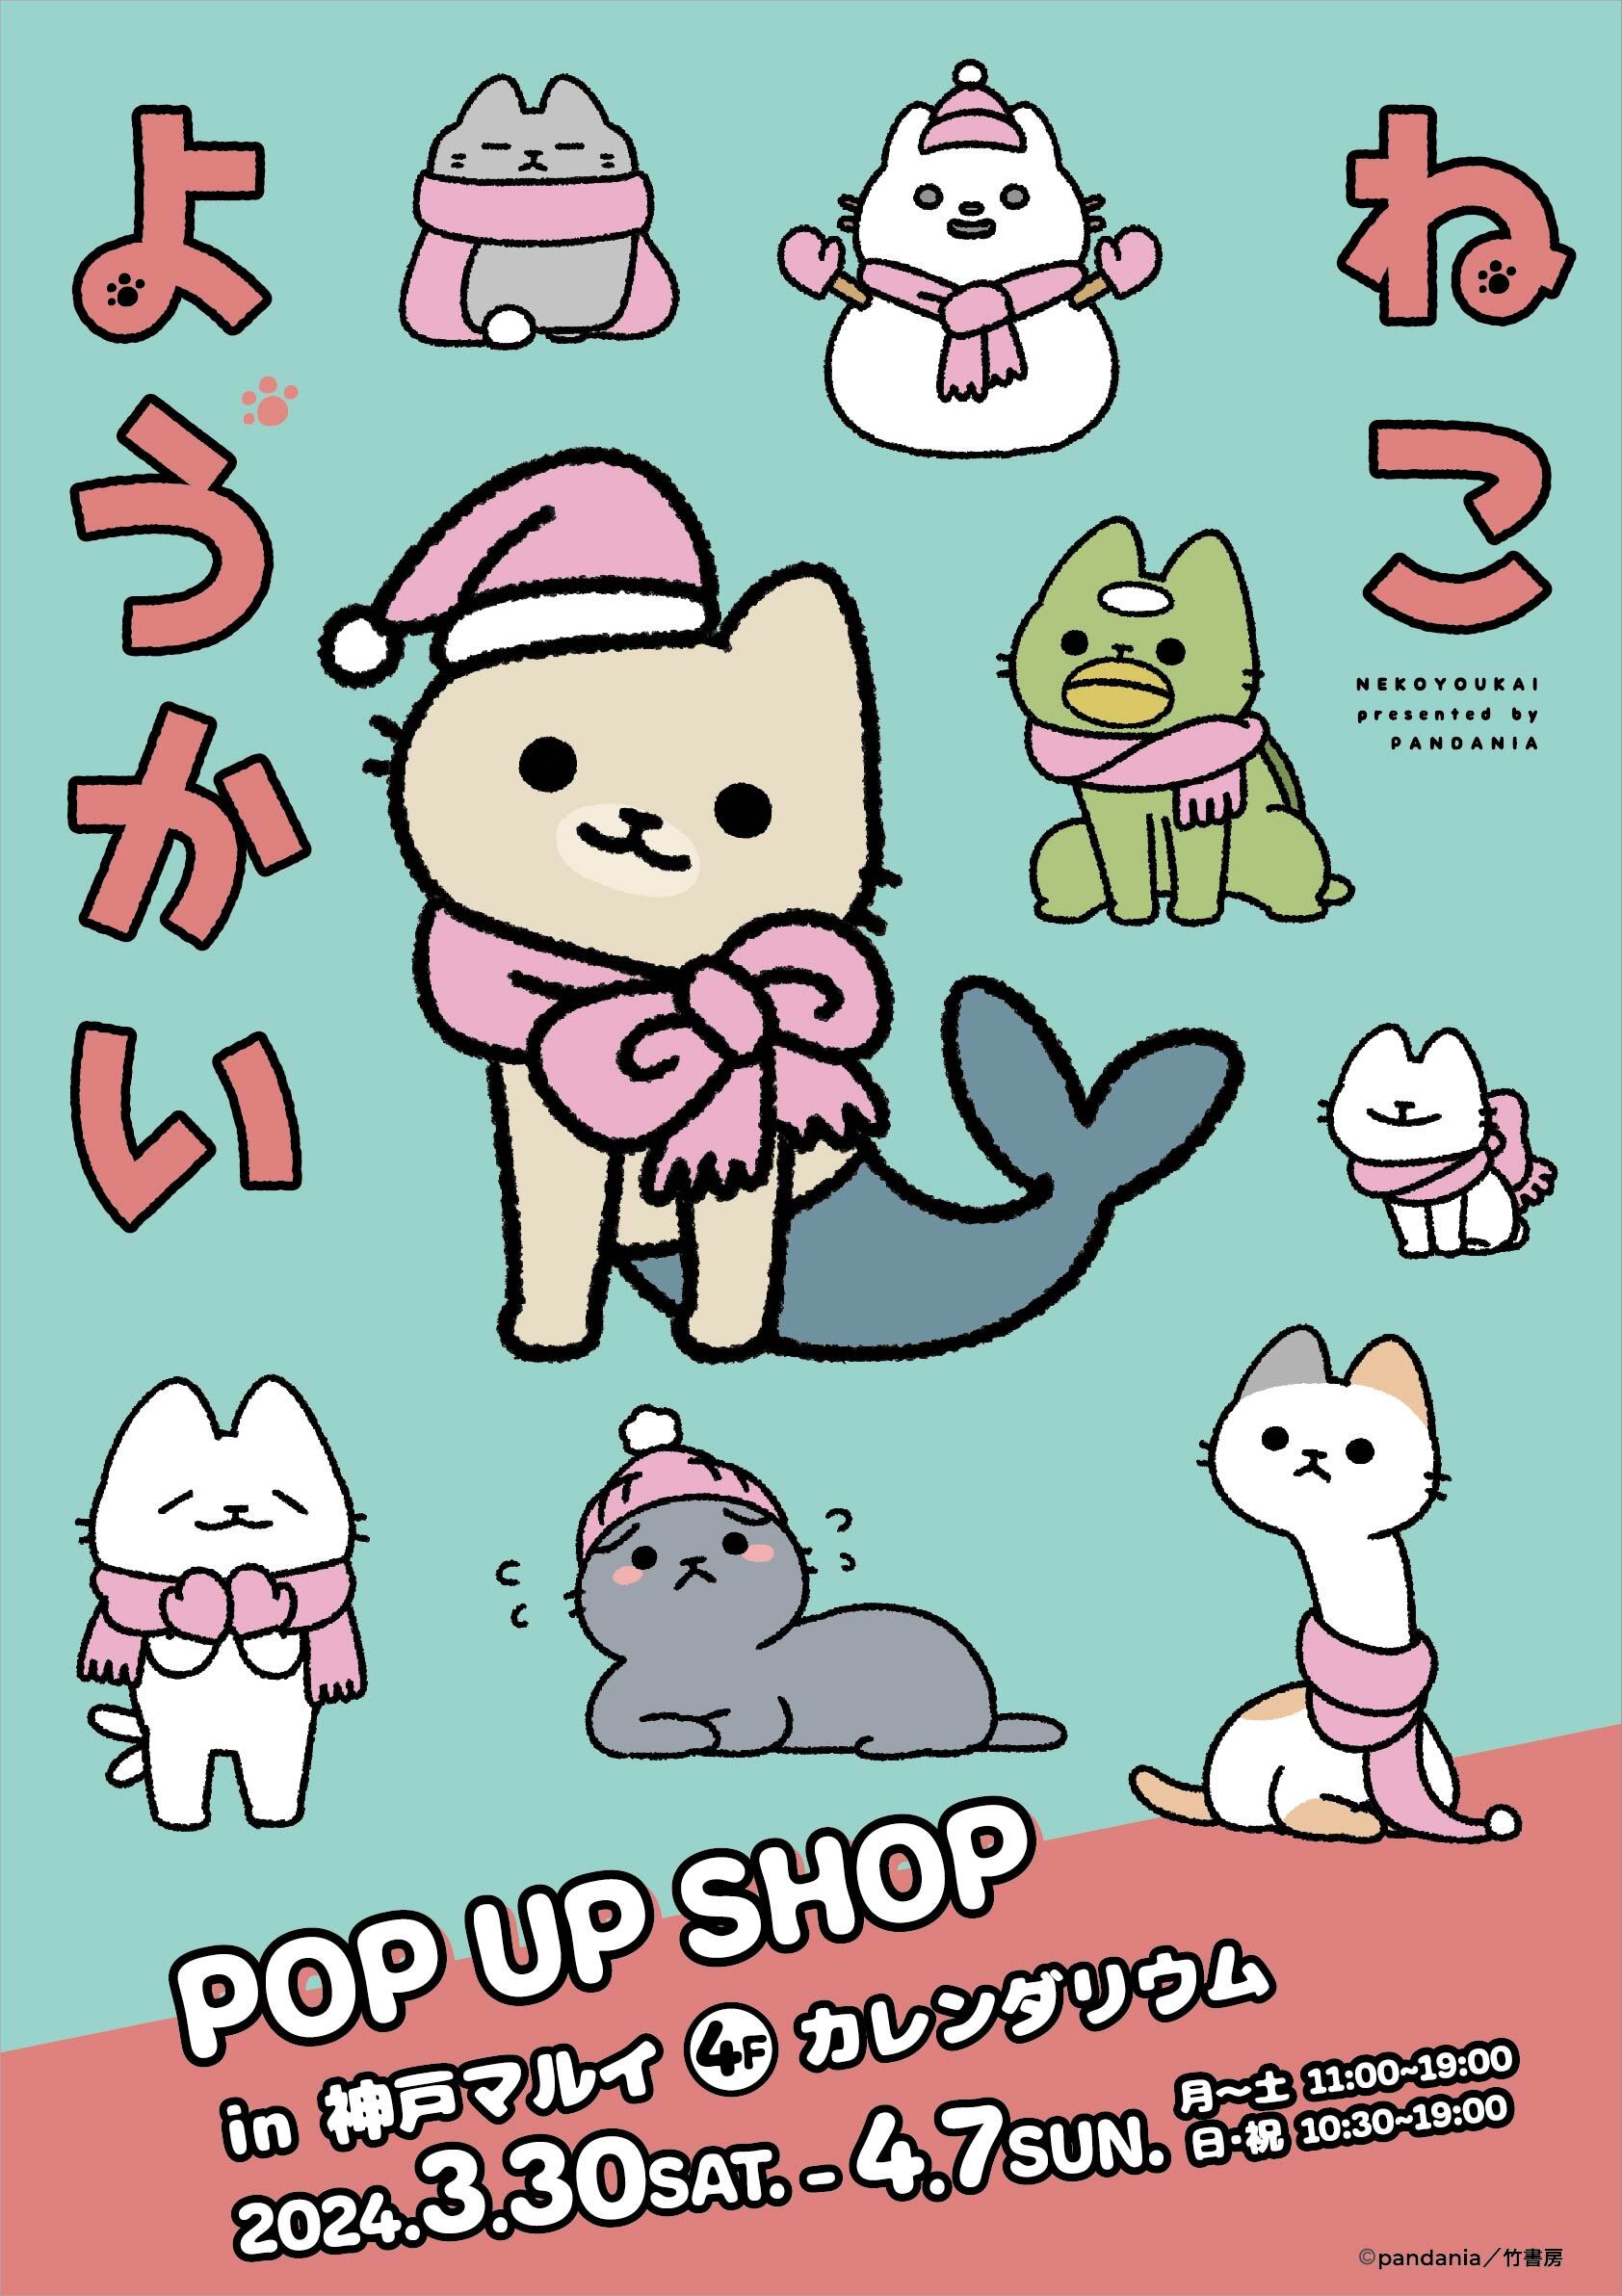 ほのぼの系ねこマンガ「ねこようかい」POP UP SHOPが
兵庫県・神戸マルイにて3月30日(土)から開催決定！